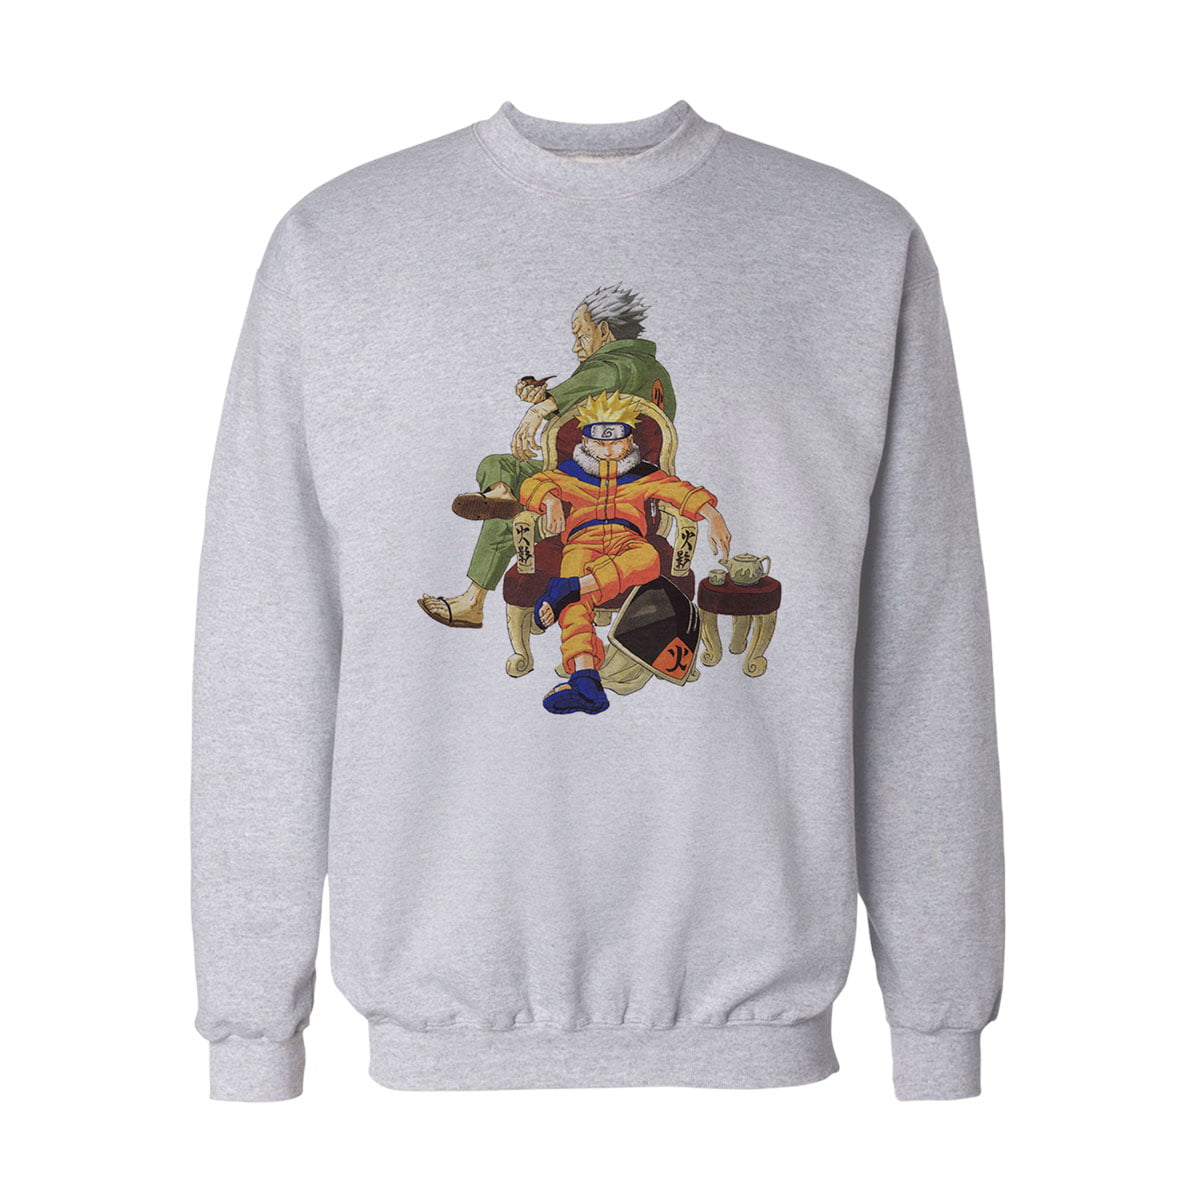 Naruto uzumaki no6 sweatshirt b - naruto uzumaki baskılı no6 sweatshirt - figurex